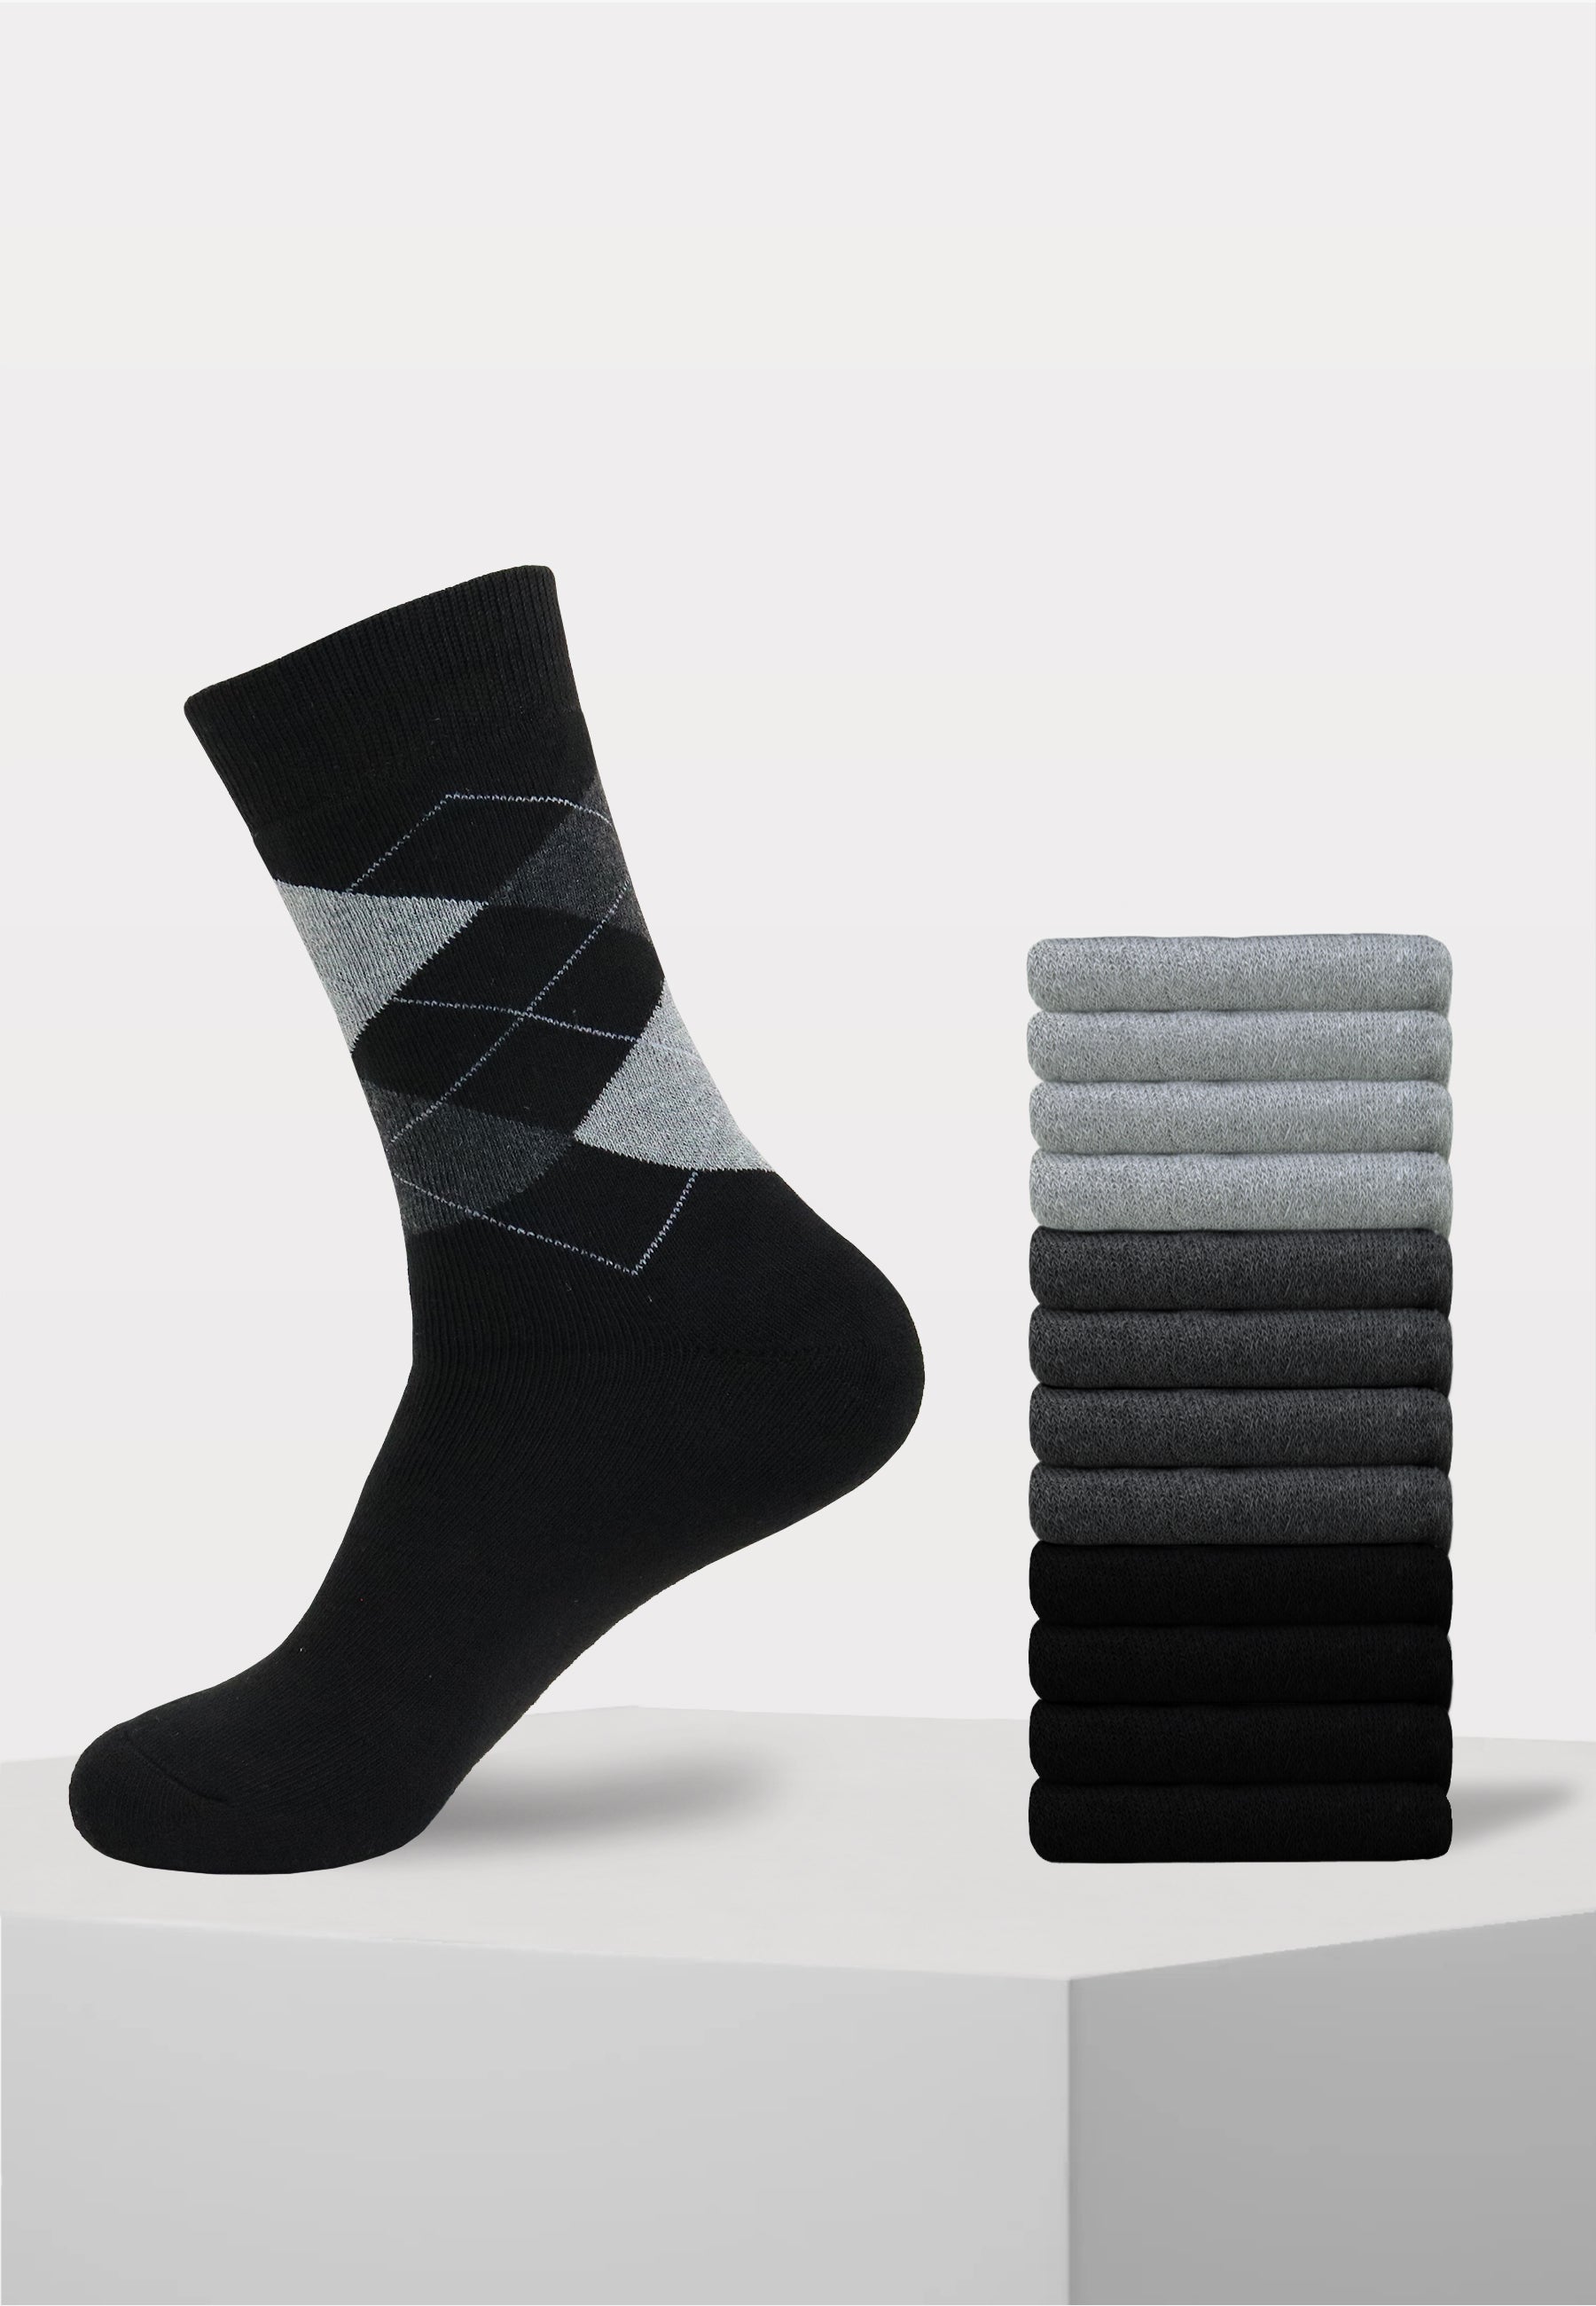 12 paar heren ruiten thermo sokken in de kleuren zwart, antraciet en grijs.